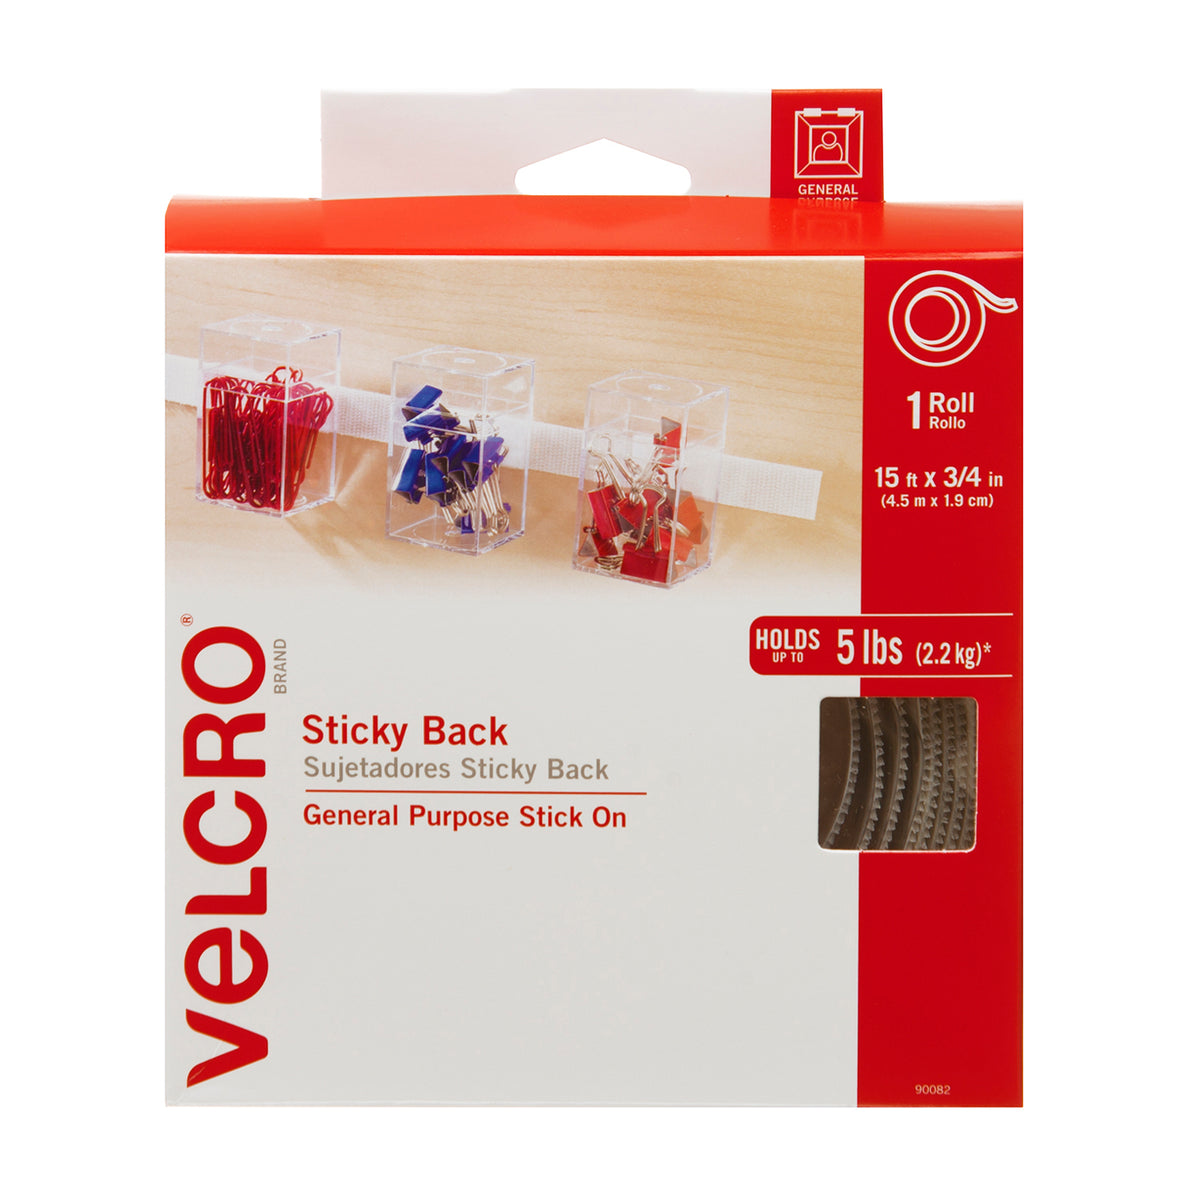 Buy Adhesive Backed VELCRO® Brand Hook and Loop Fasteners